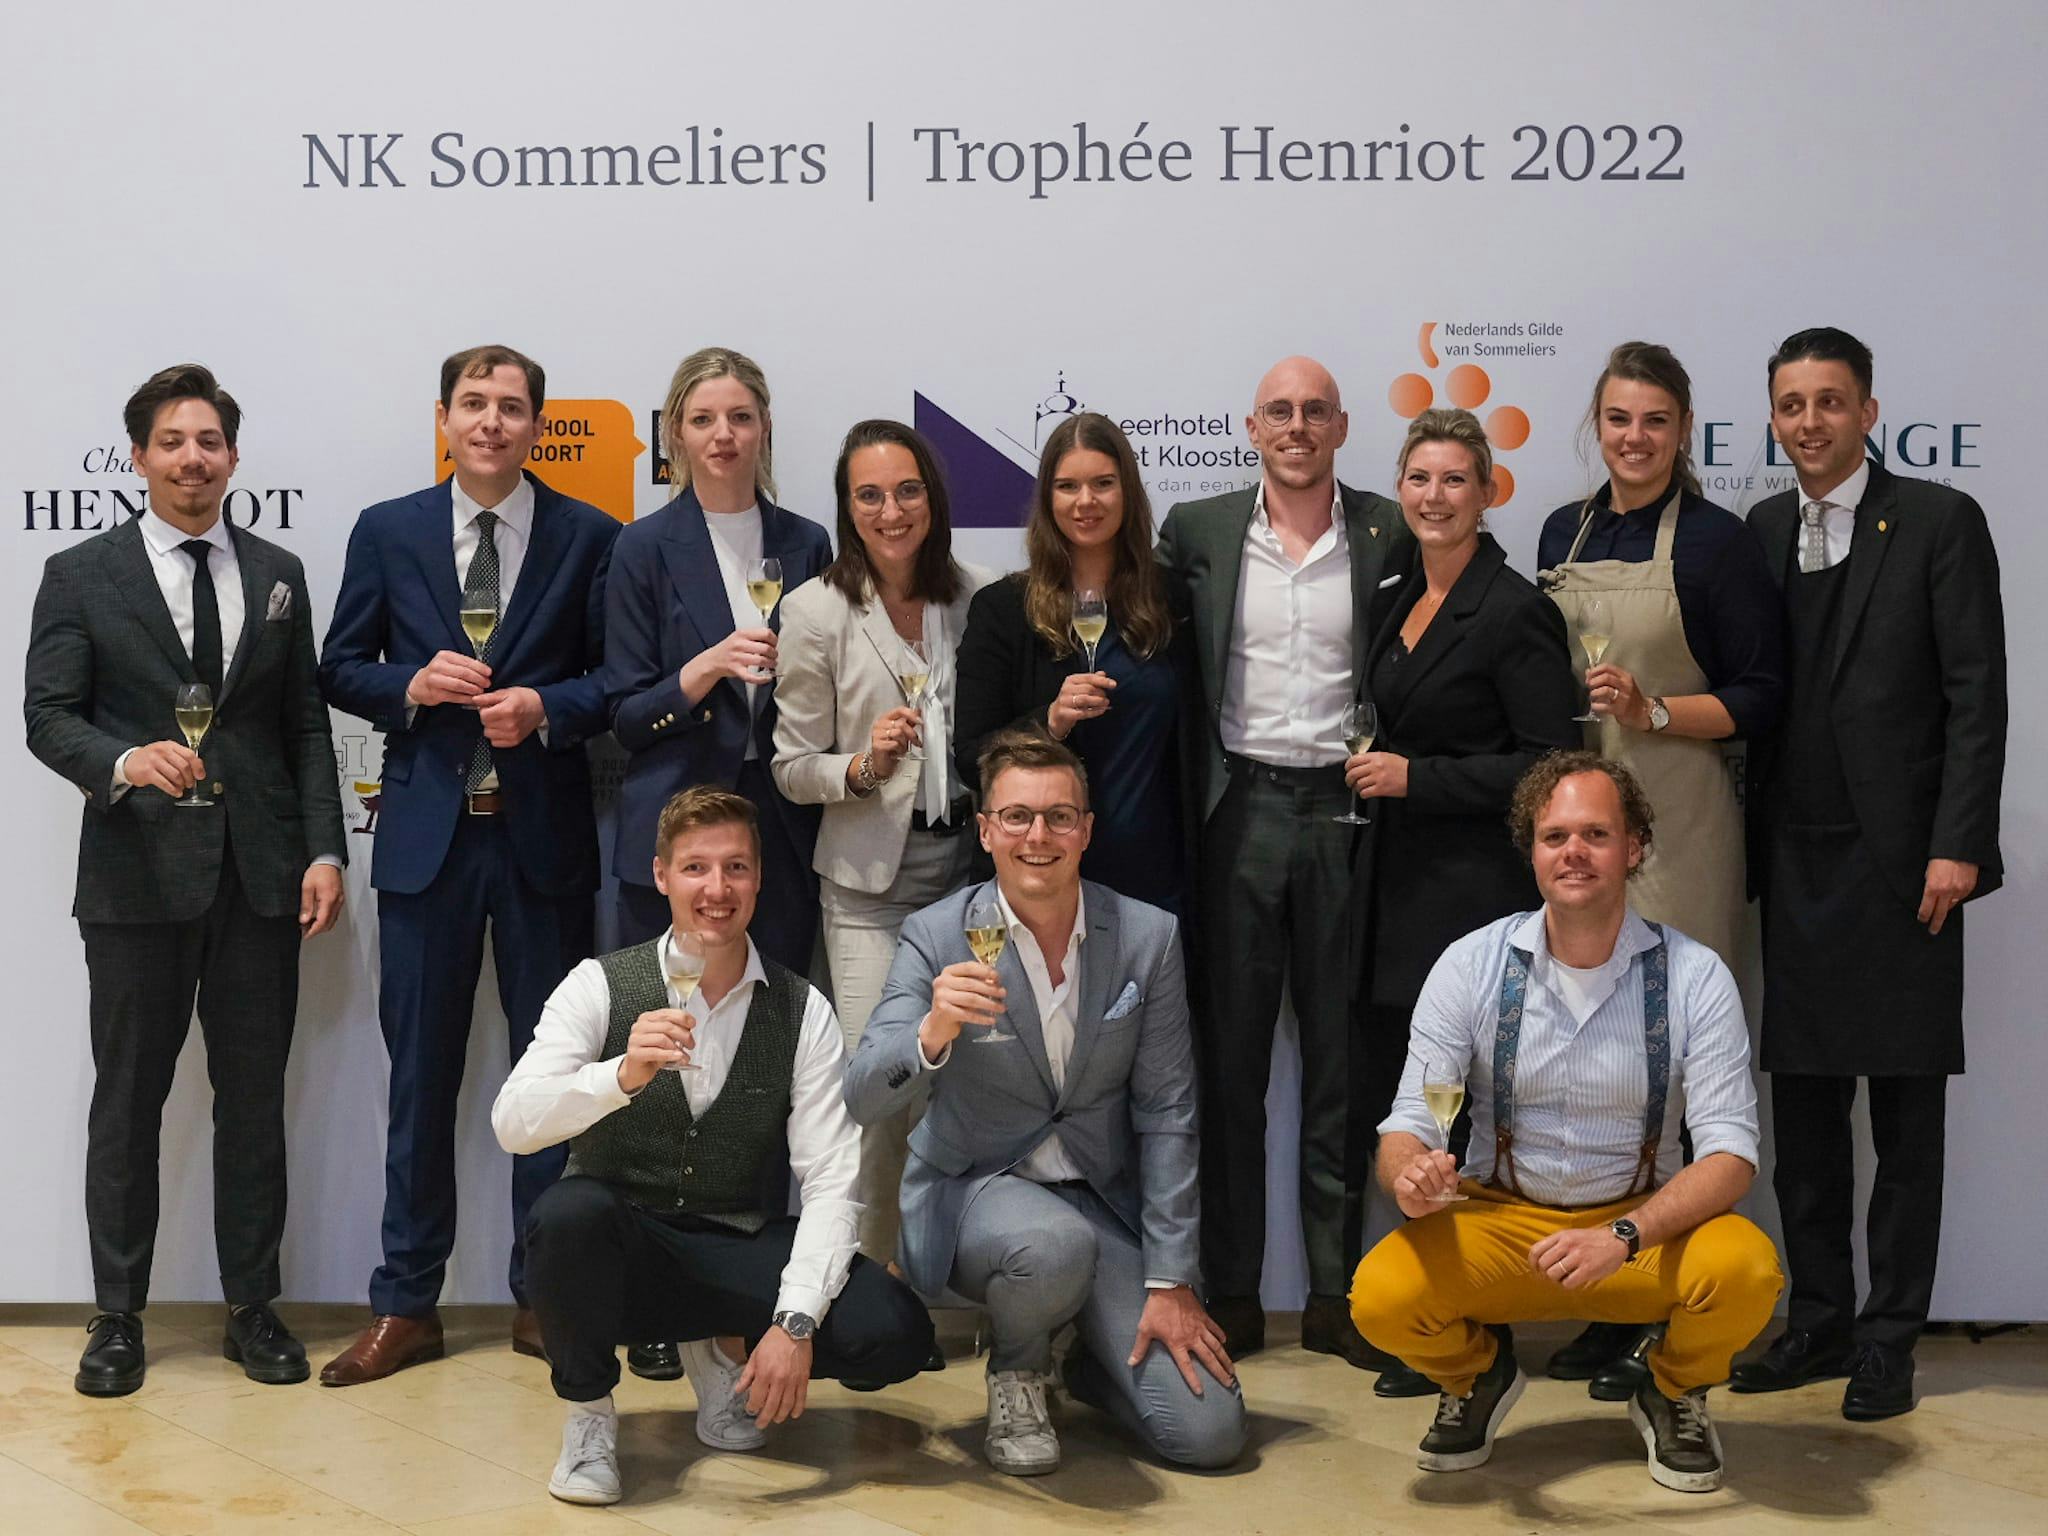 De 12 deelnemers aan het NK Sommelier 2022